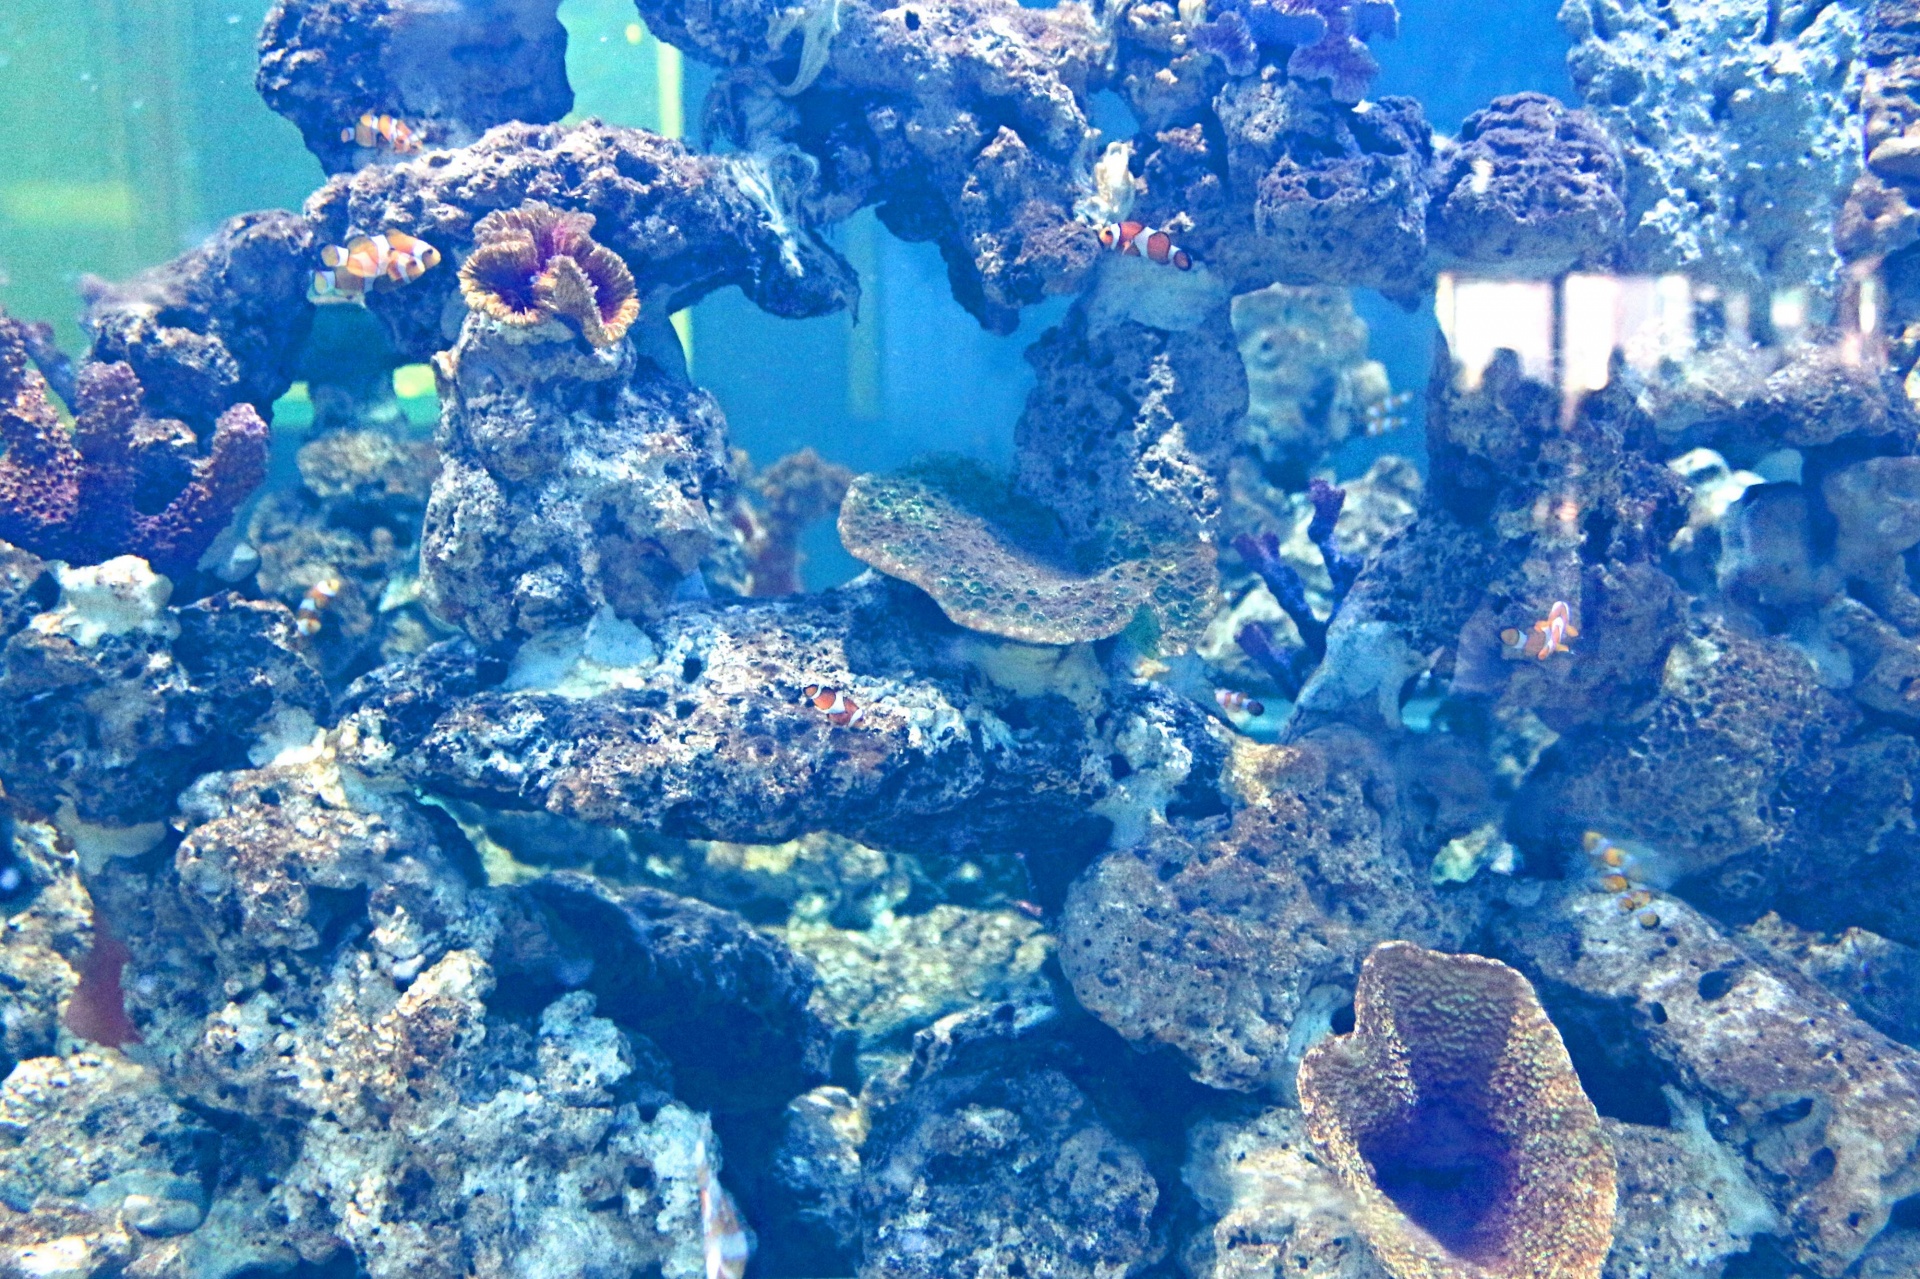 Fish Aquarium In Srisaket , Thailand